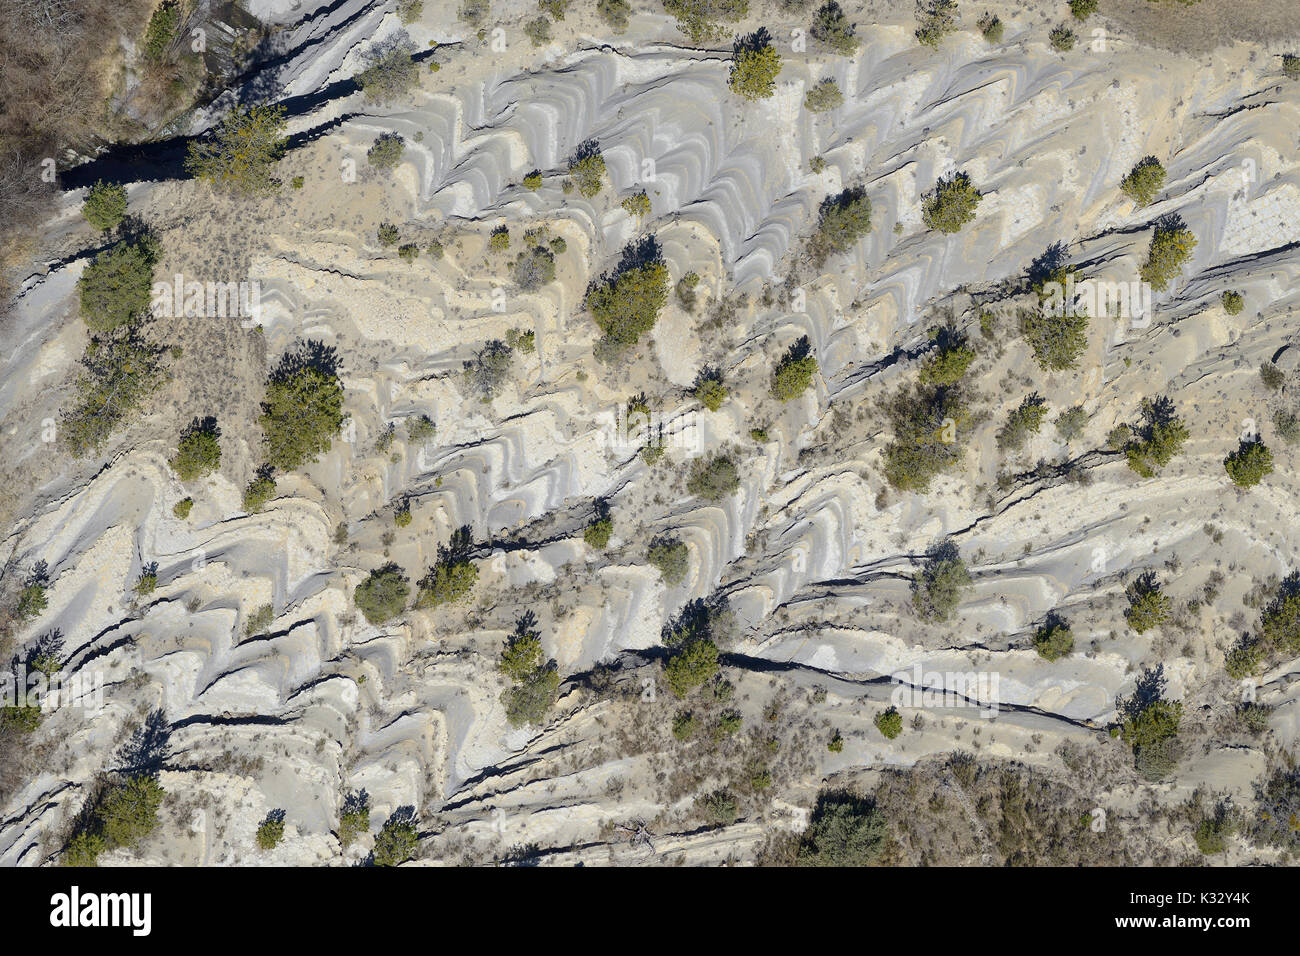 LUFTAUFNAHME. Chevron-Muster in schrägen Gesteinsschichten mit verstreuten Bäumen. Lieuche, Hinterland der französischen Riviera, Alpes-Maritimes, Frankreich. Stockfoto